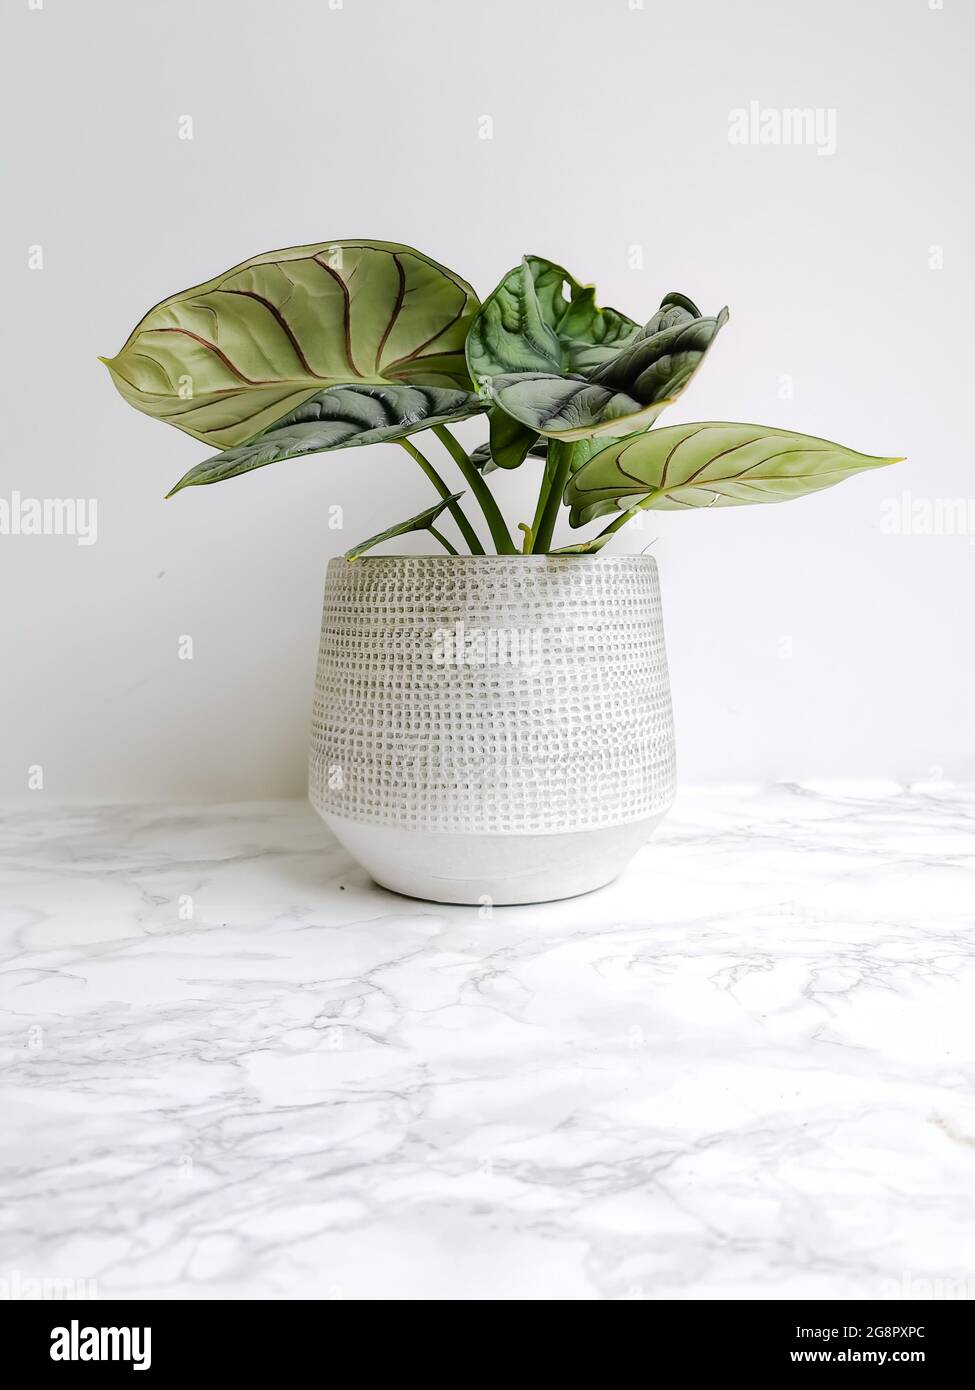 Alocasia silver dragon or silver jewel alocasia ( Alocasia beginda) in a white planter against a white background Stock Photo